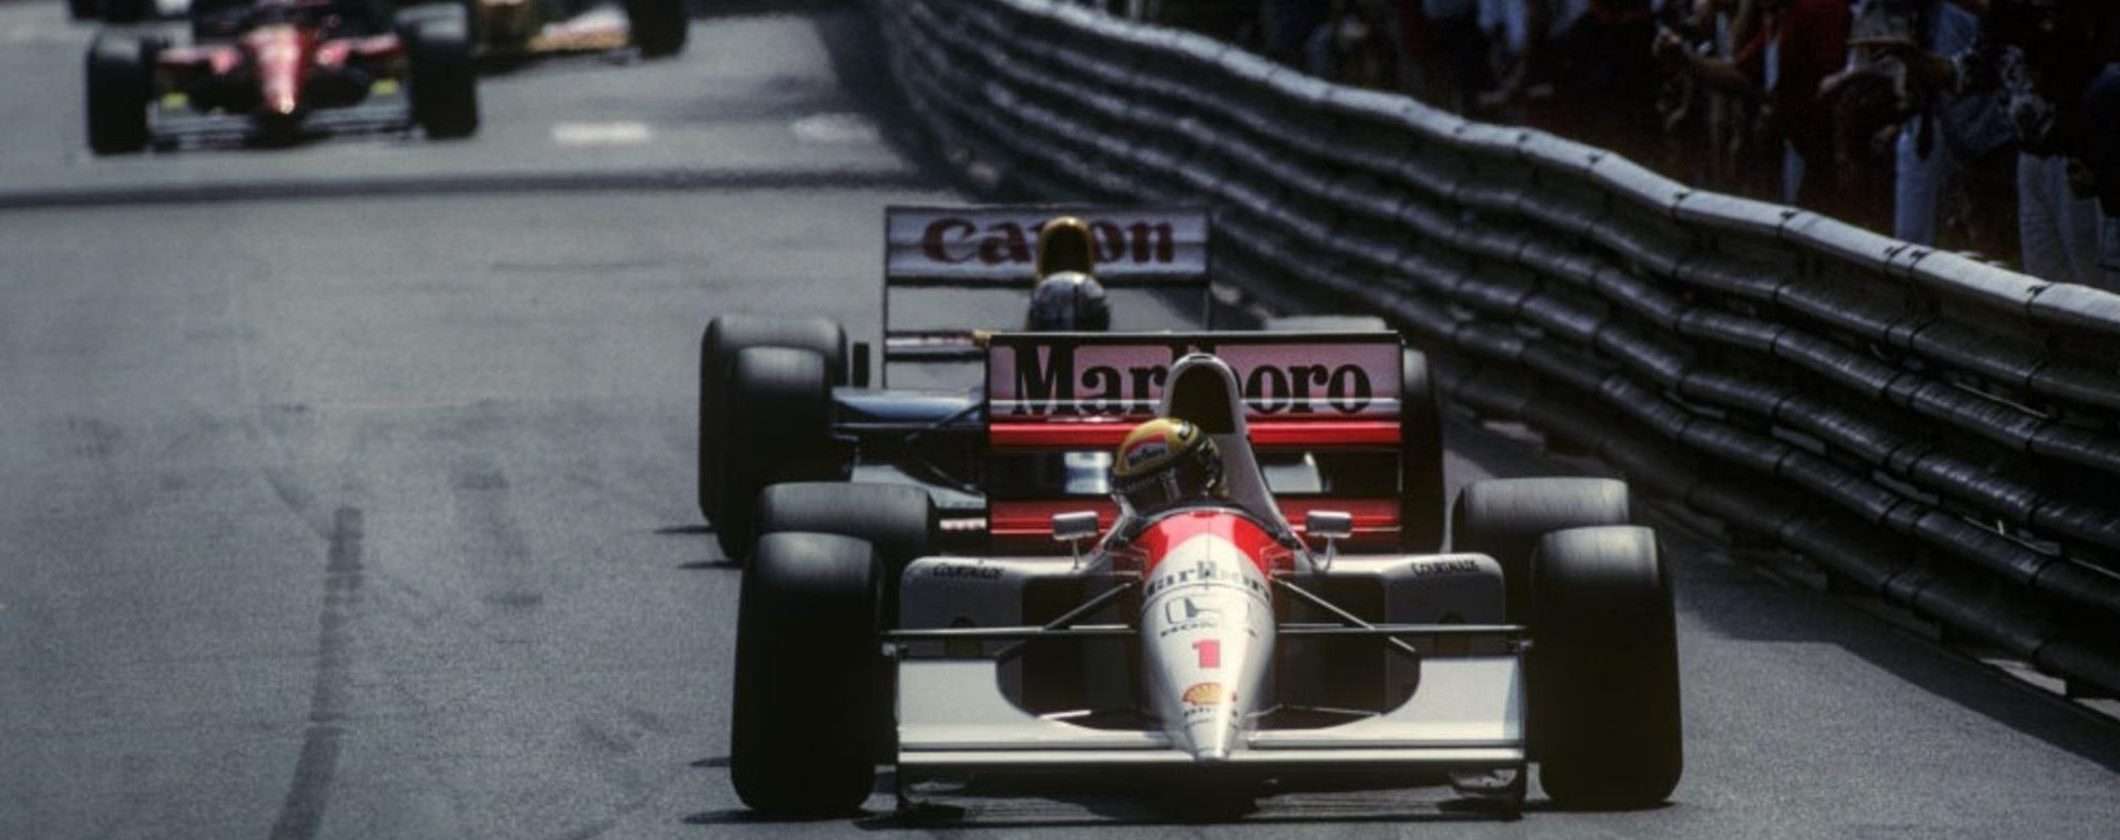 Formula 1 GP di Monaco: come guardare gratis la gara in streaming